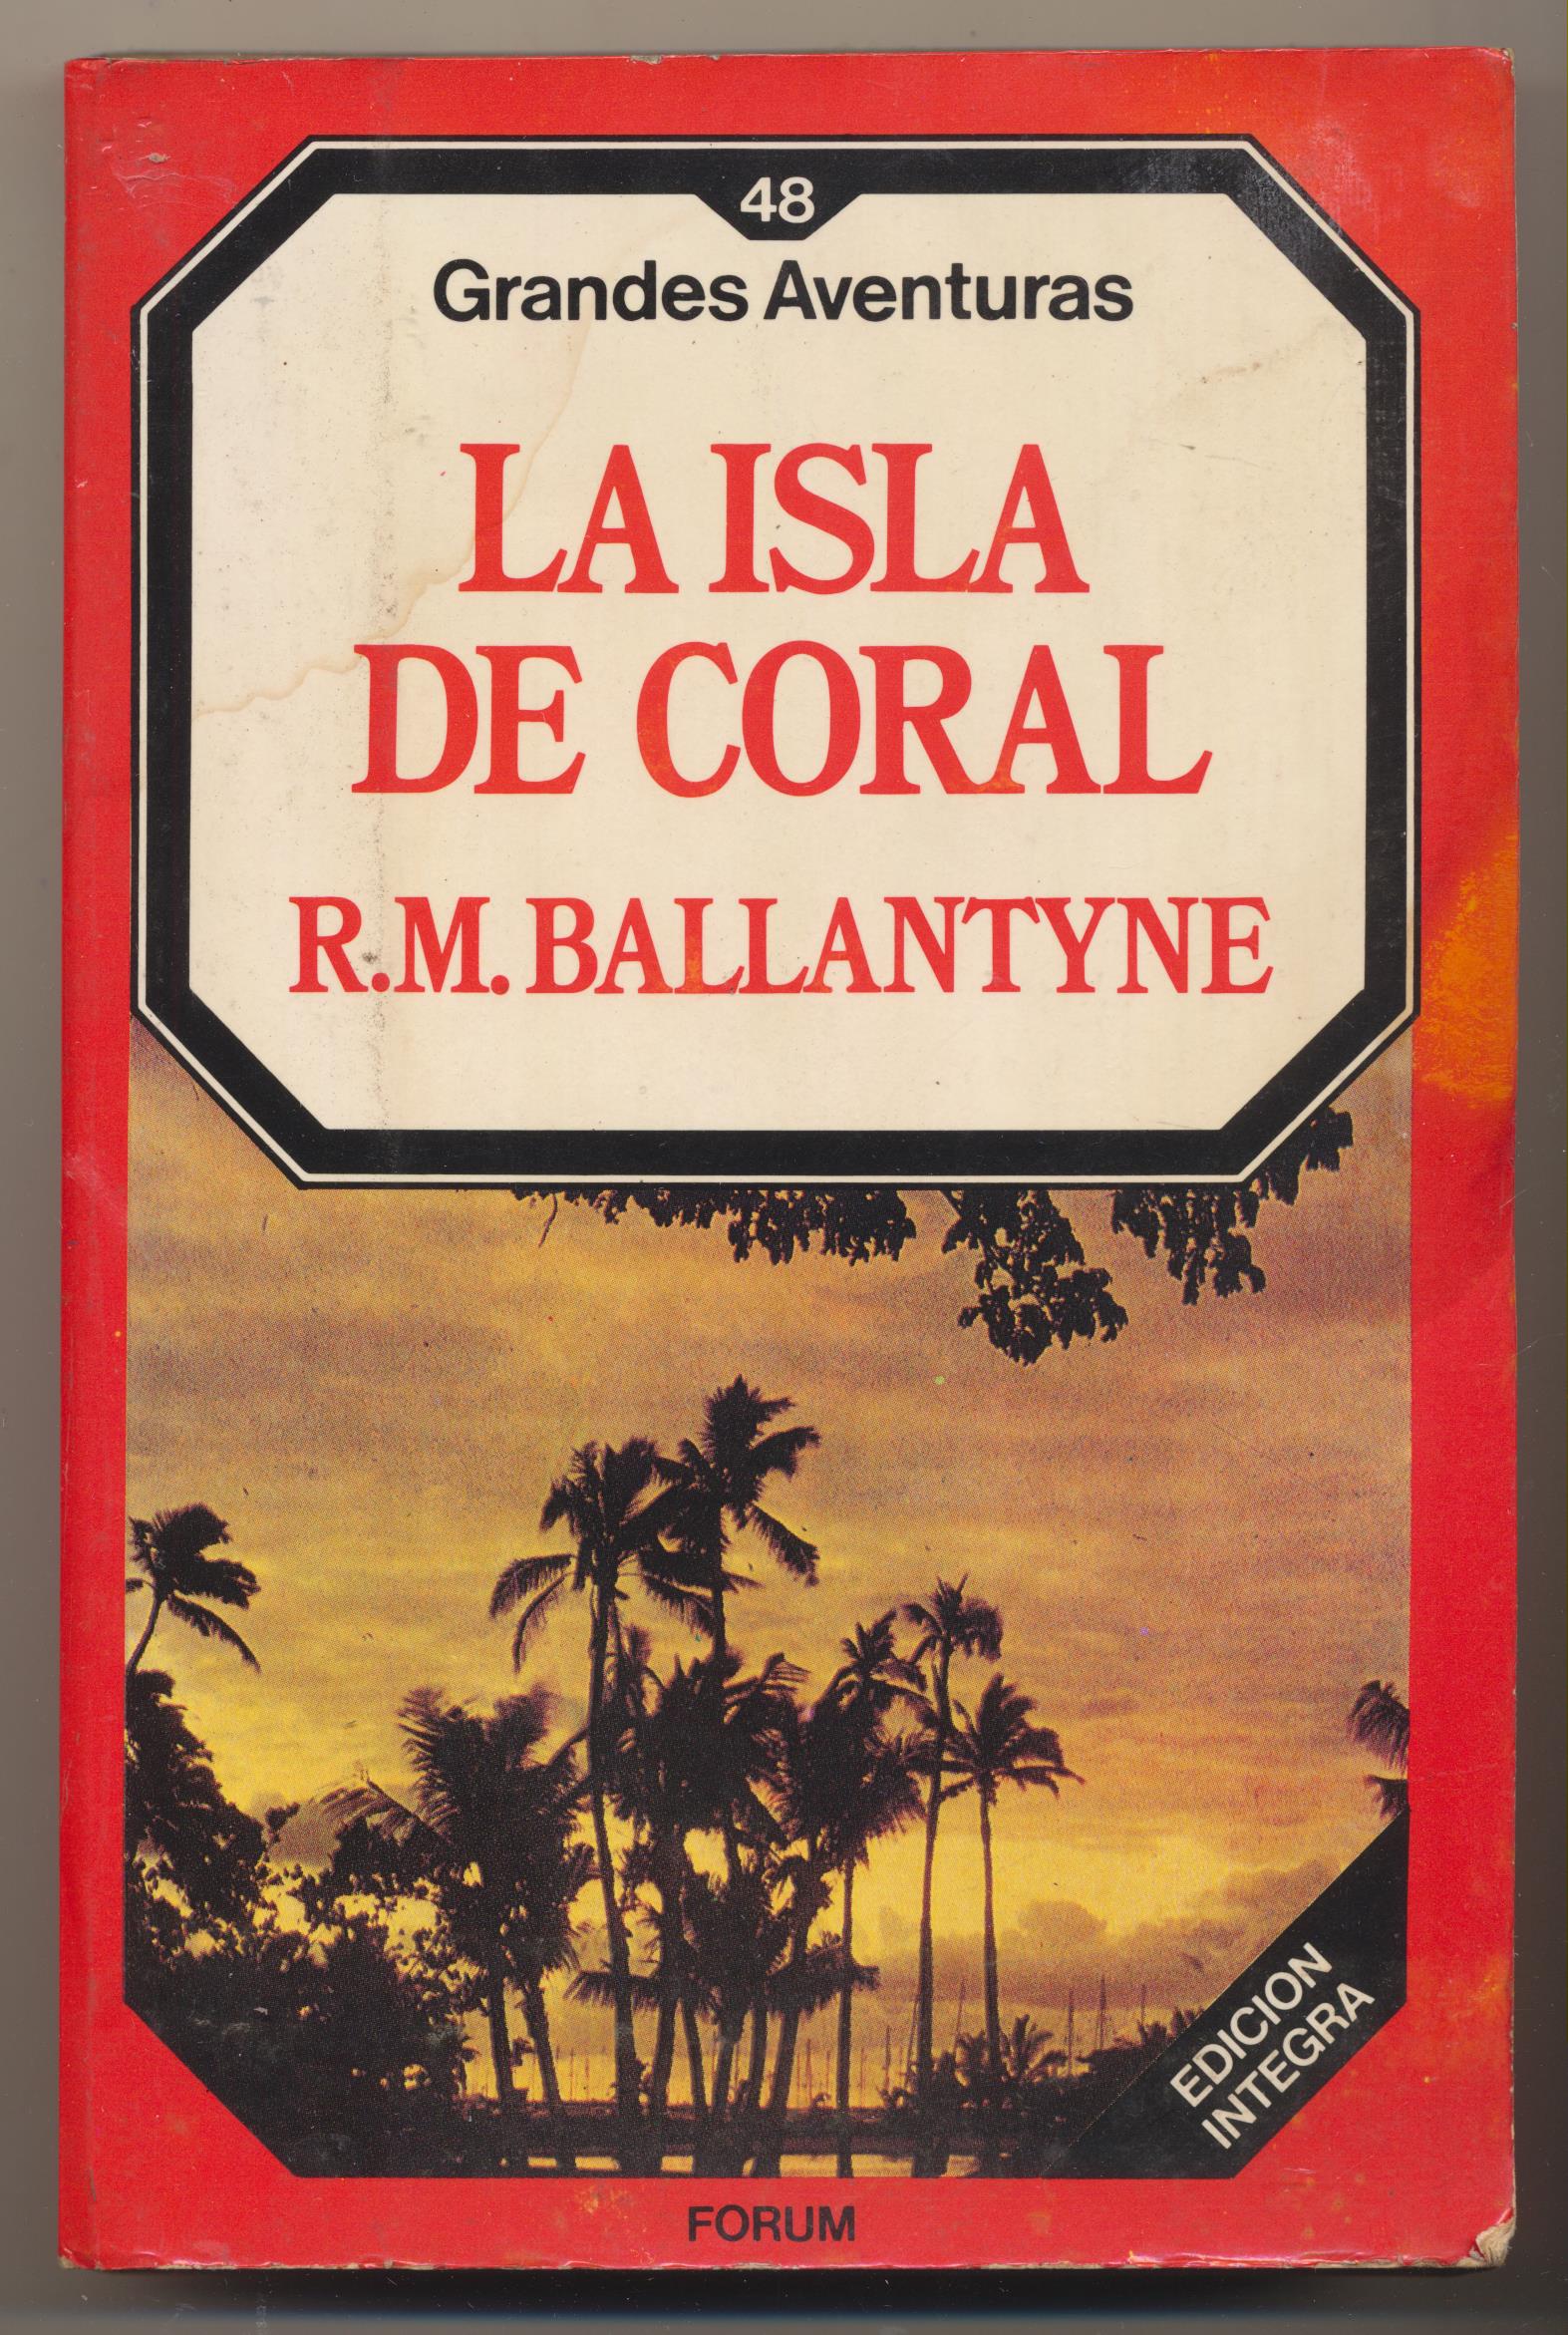 Grandes Aventuras nº 48. La Isla de Coral por R.M. Ballantyne. 1ª Edición Forum 1985